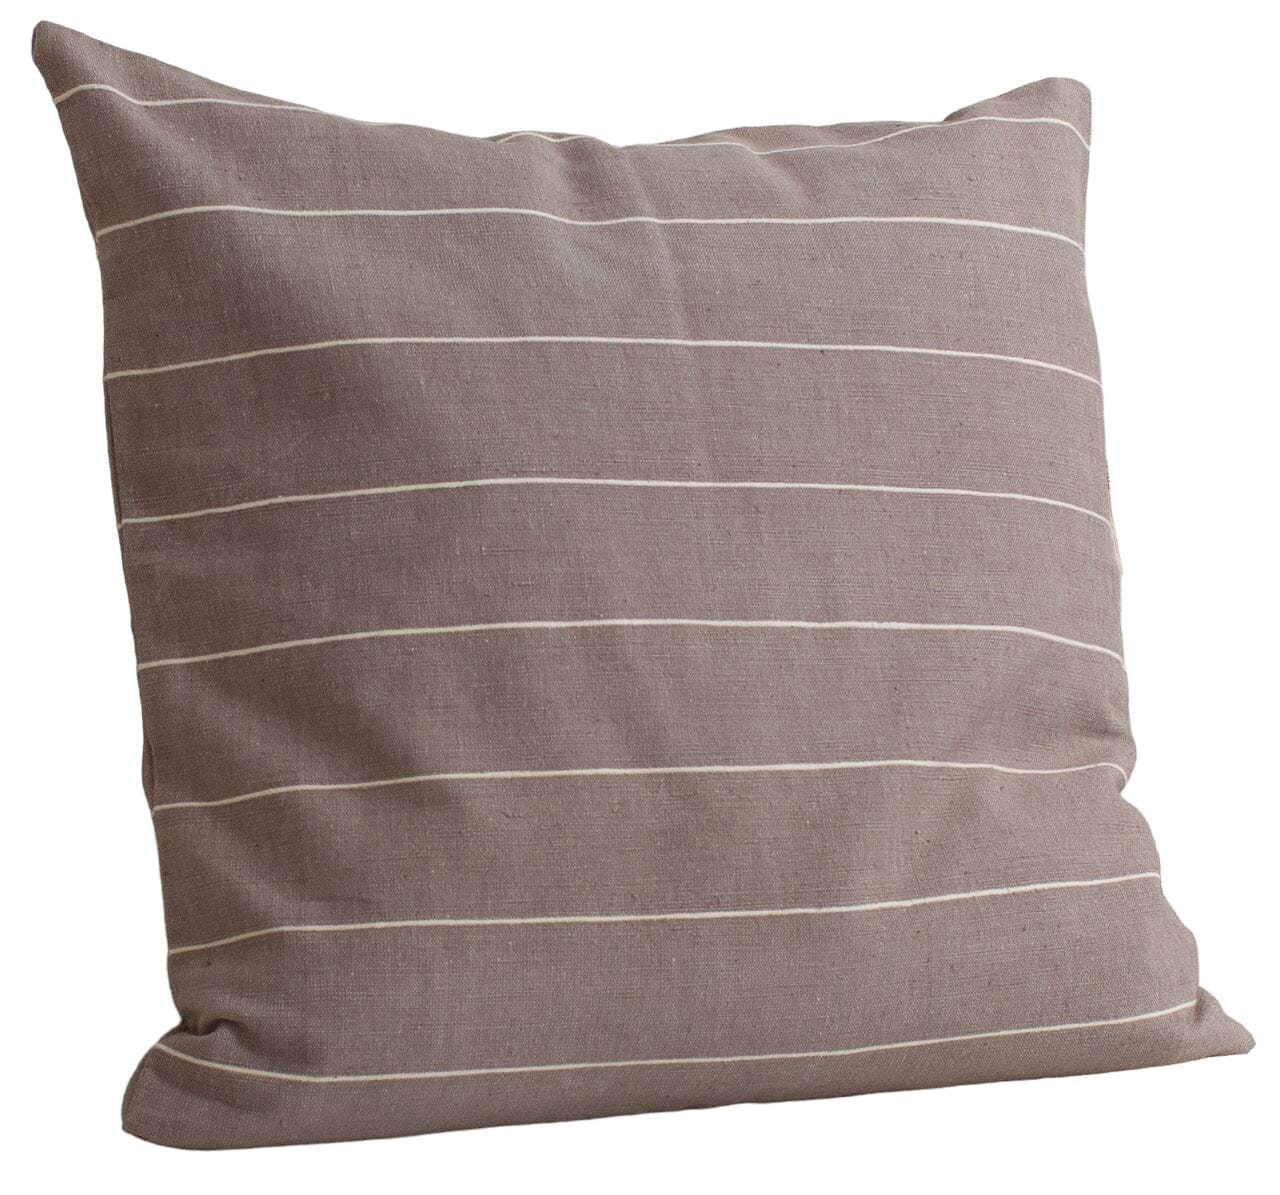 Adama cushion cushion sabahar Stone/Natural 